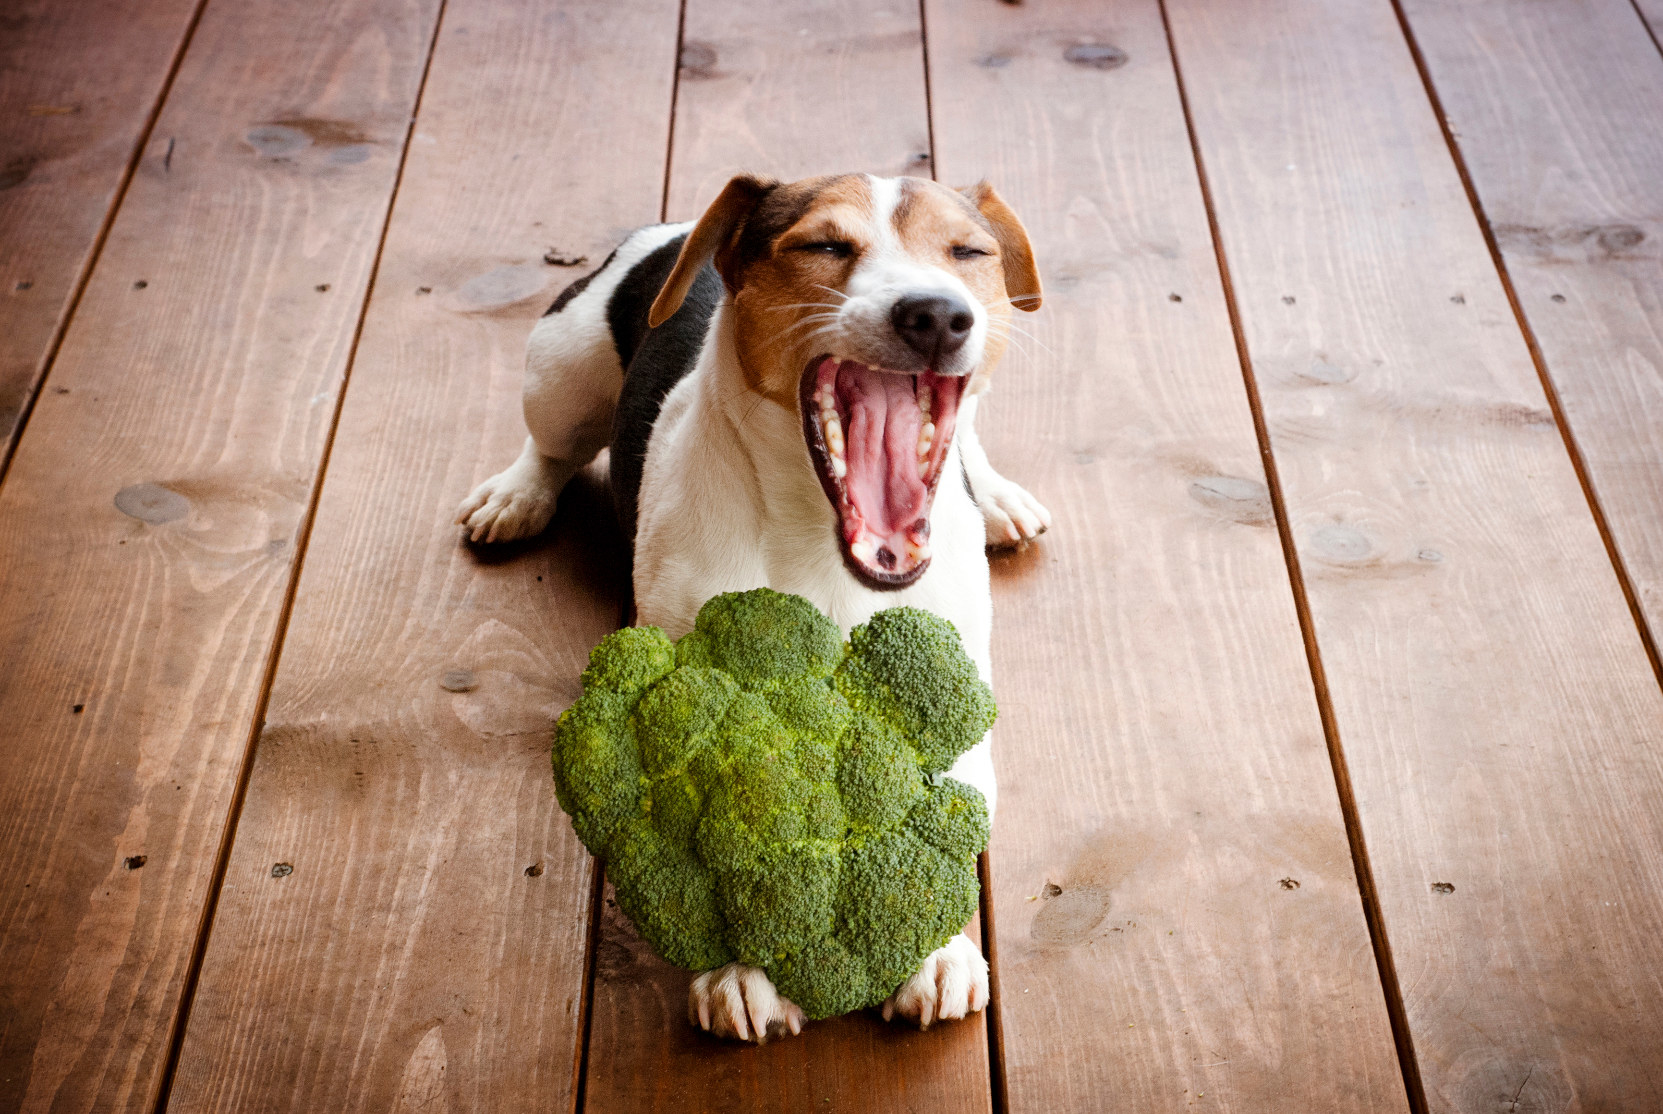 a dog yawning while holding broccoli